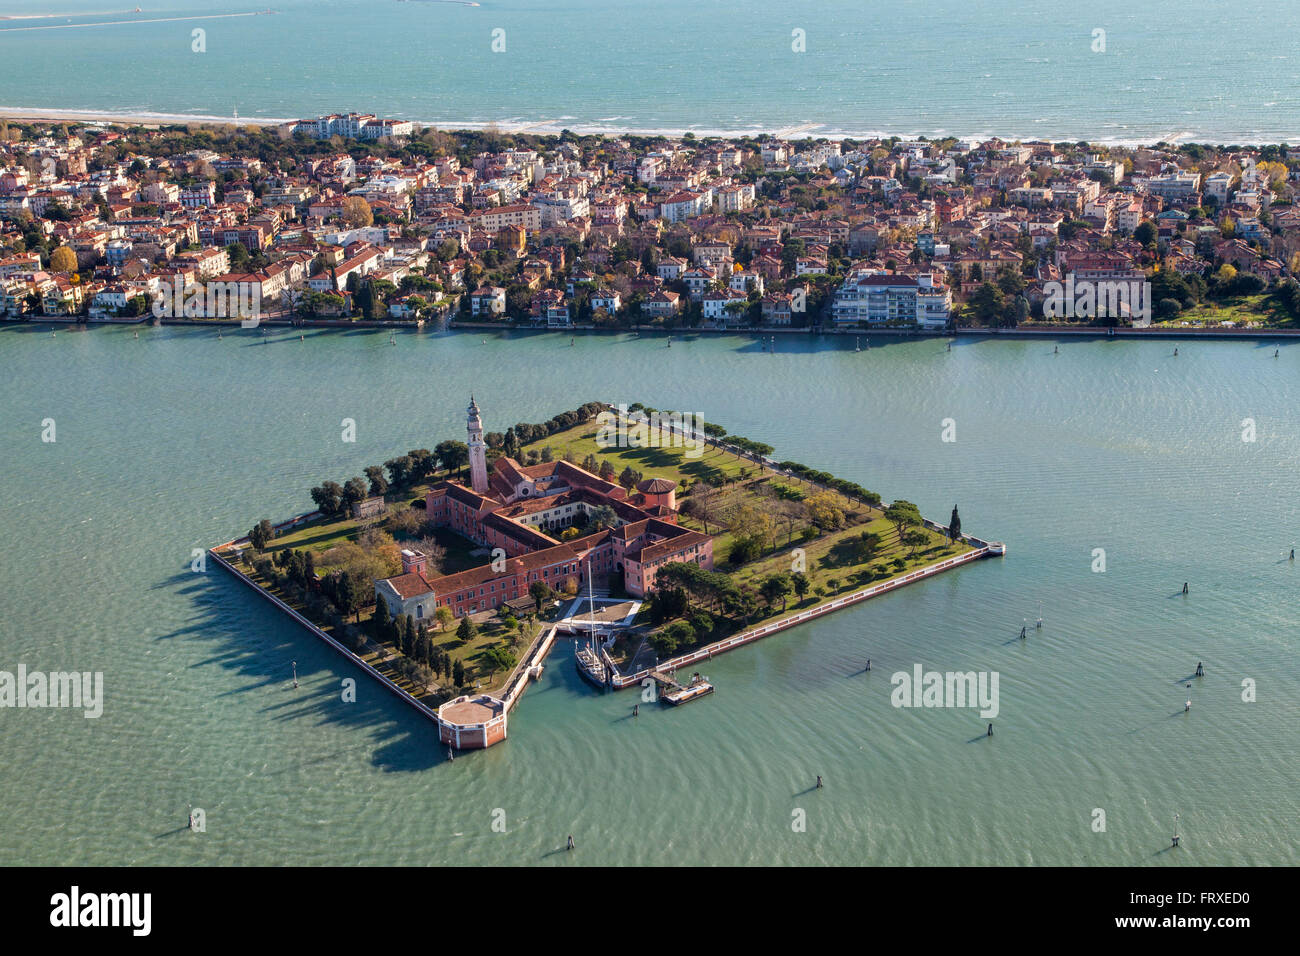 Aerial view of the Island of San Lazzaro, Lido, Mediterranian Sea, Venice, Veneto, Italy Stock Photo